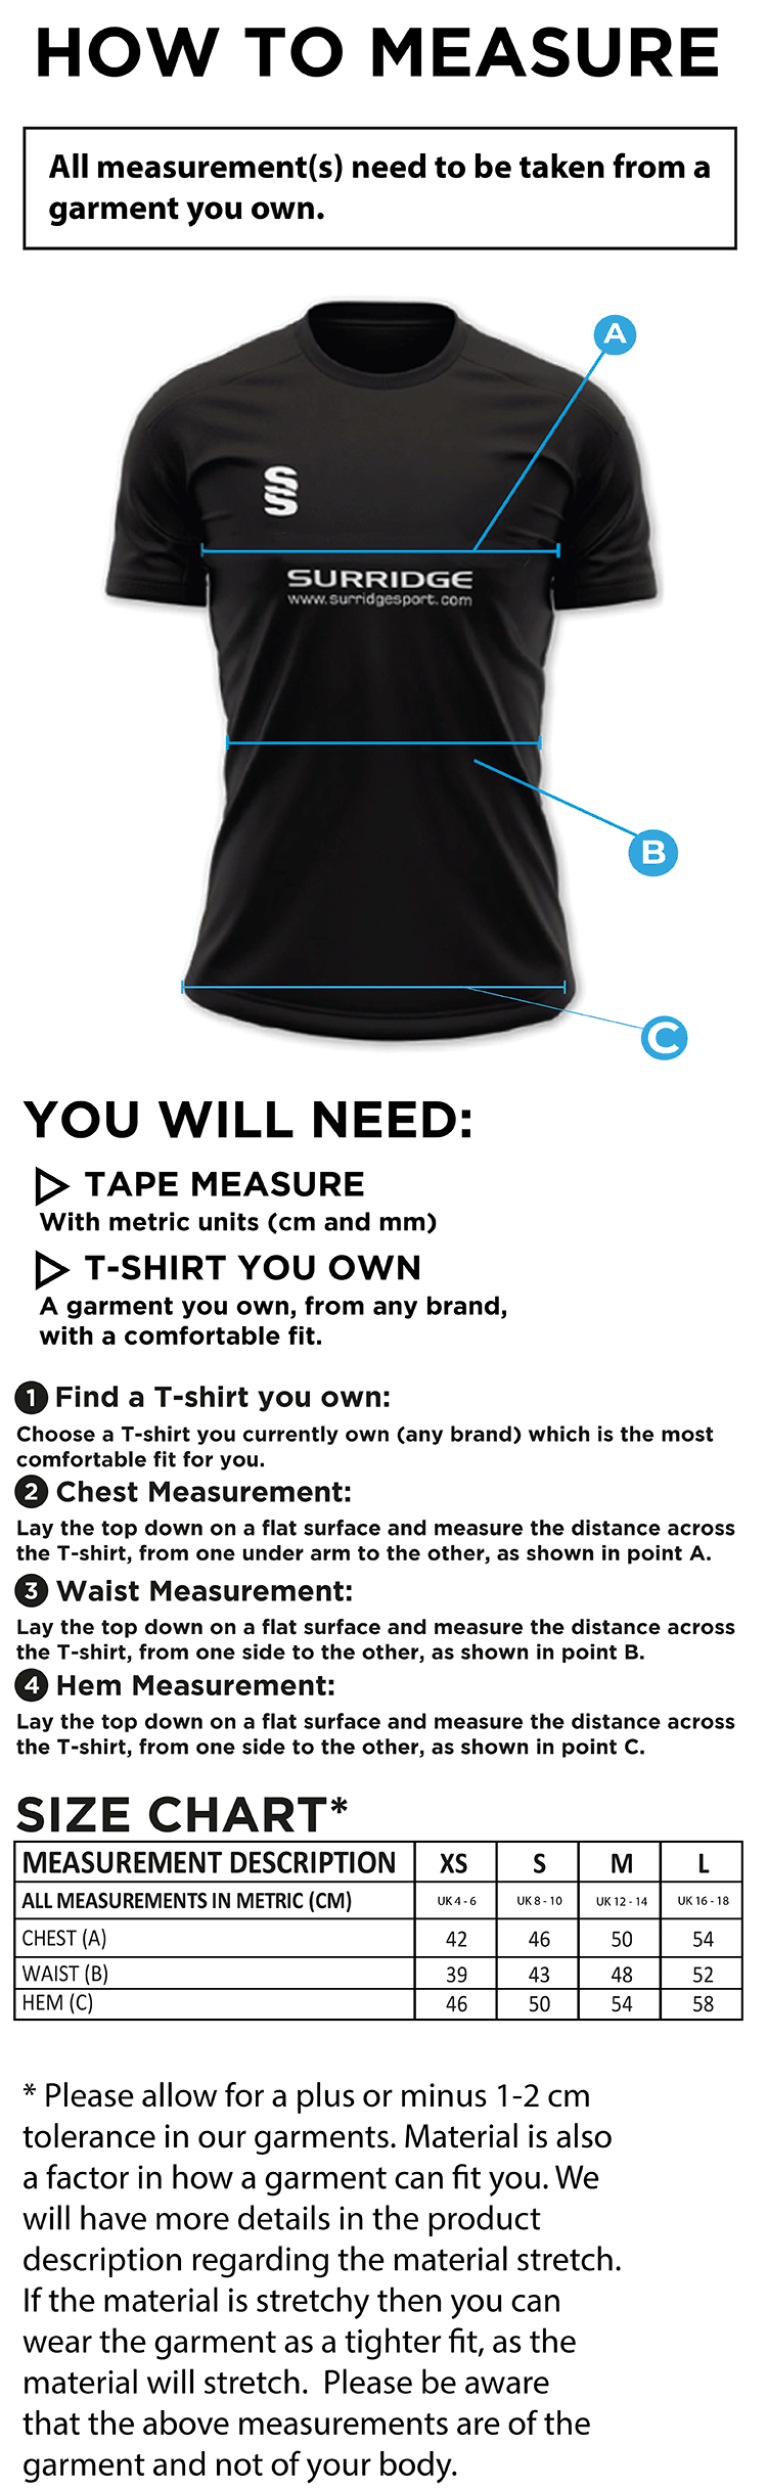 Shepley CC - Women's Dual Polo Shirt - Size Guide